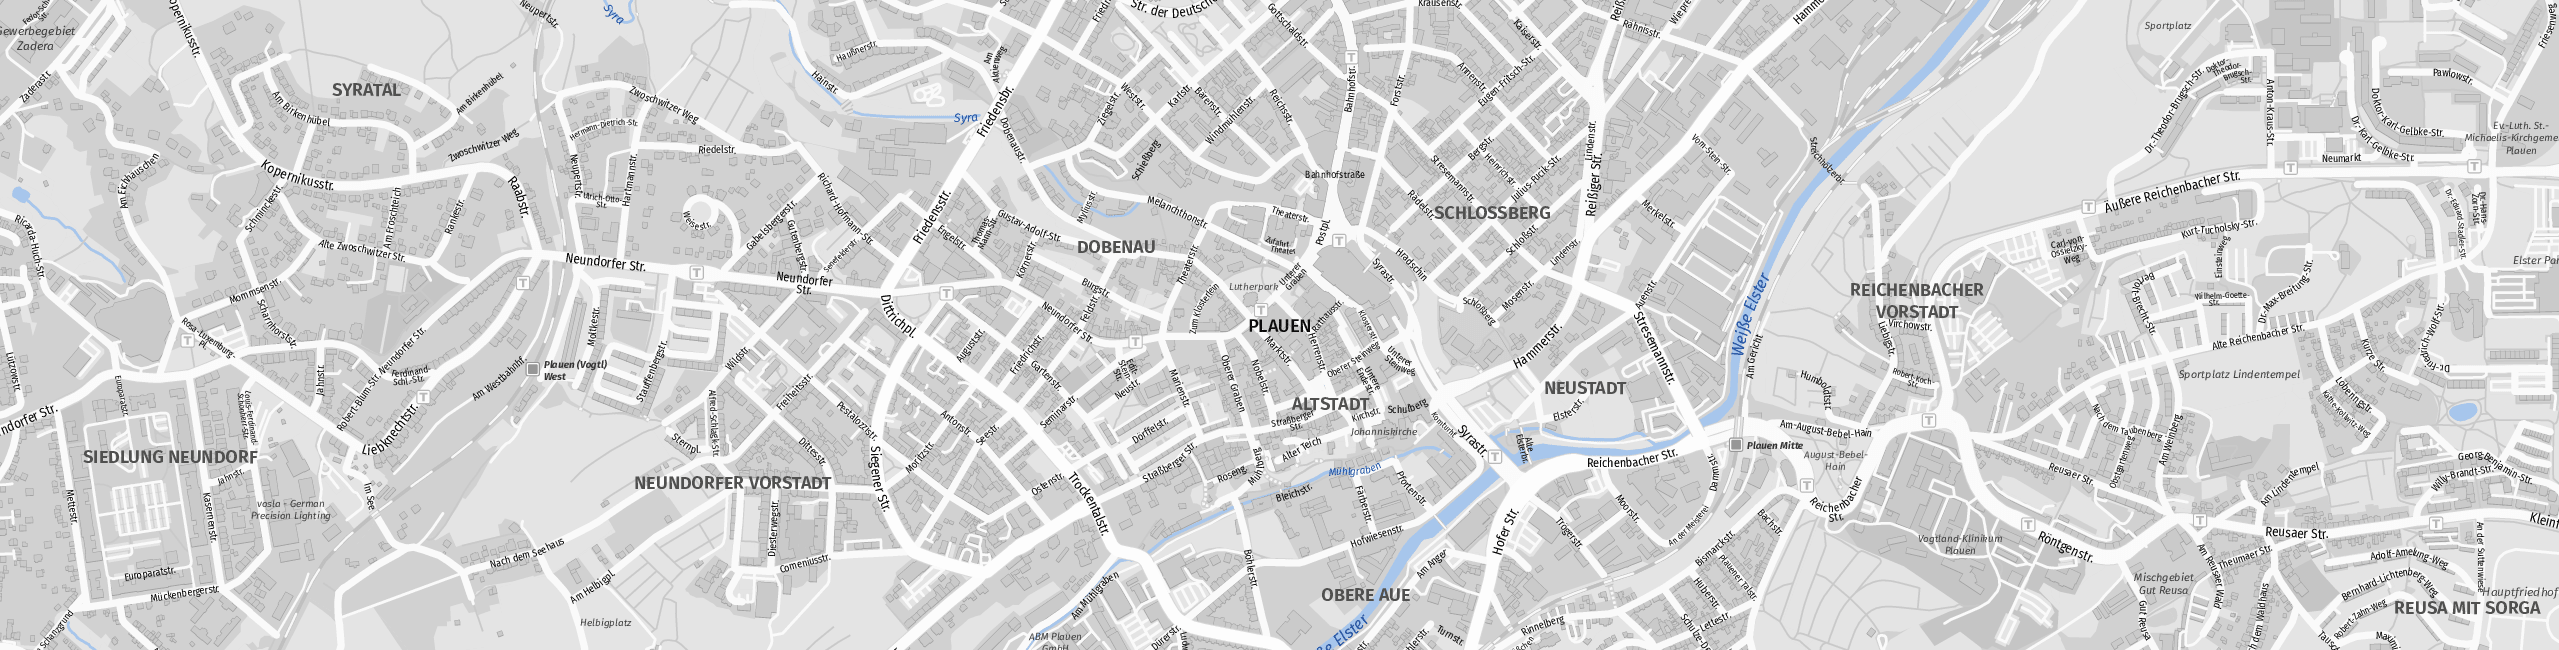 Stadtplan Plauen zum Downloaden.